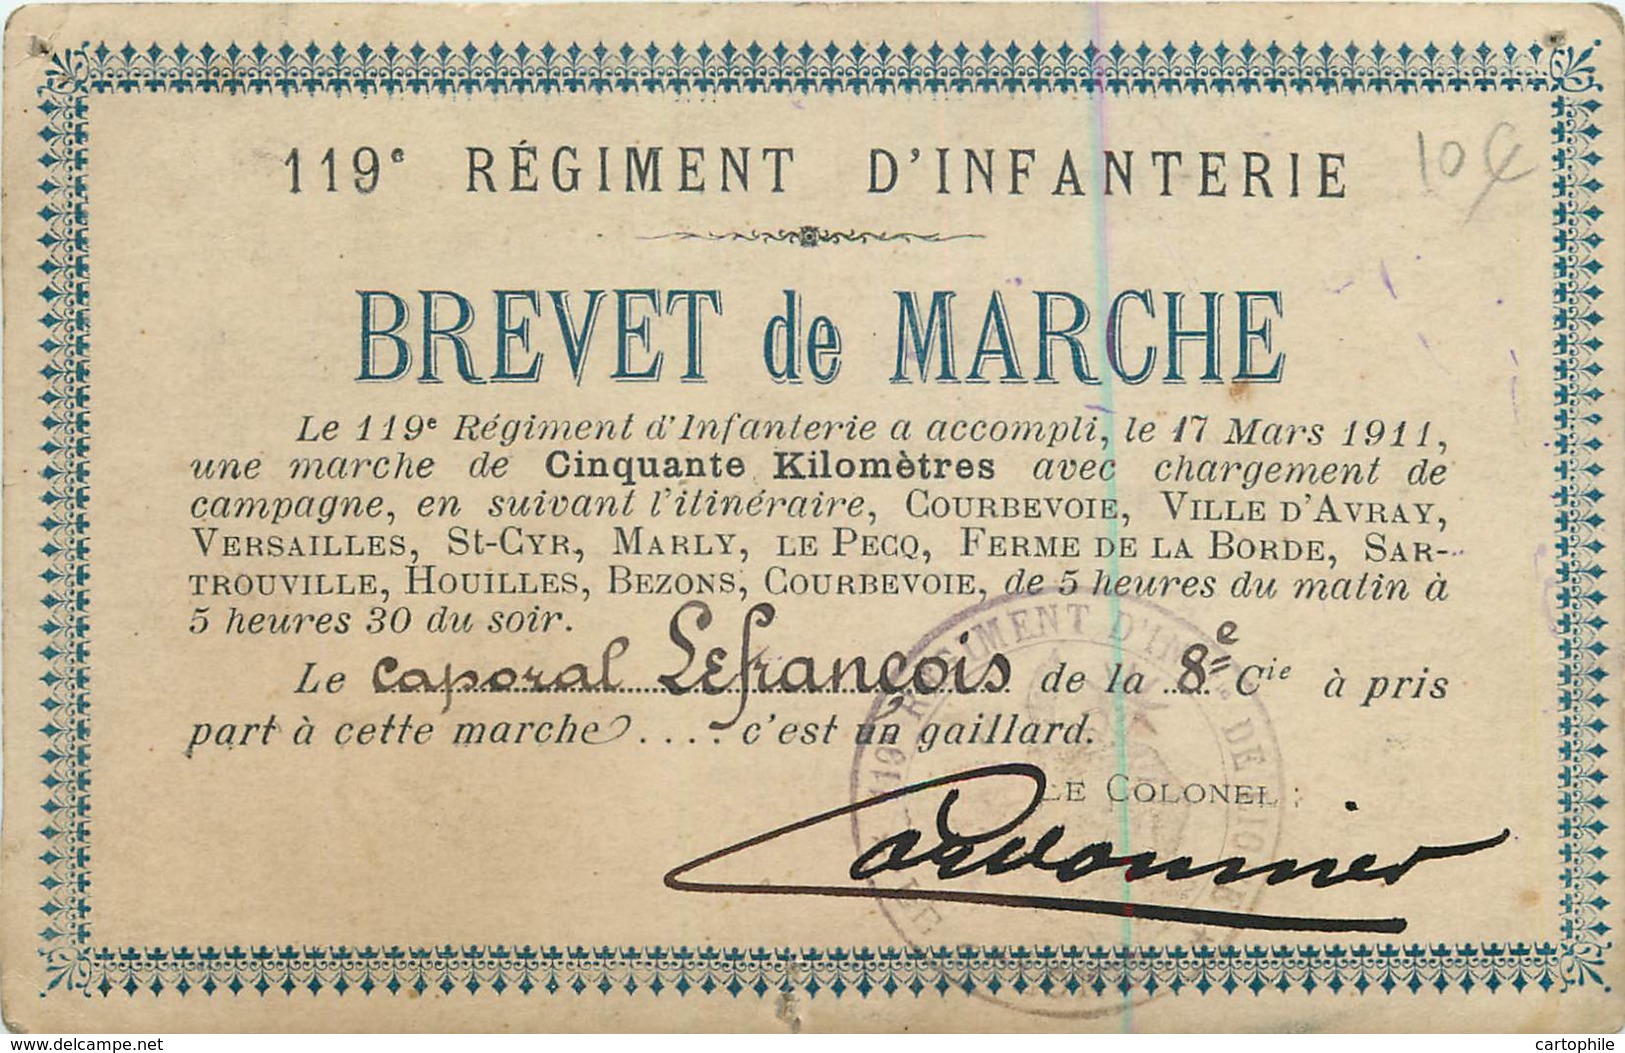 Carte Photo D'un Brevet De Marche Du 119e RI En 1911 - Caporal Lefrançois Signé Par Le Colonel Cordonnier - Manoeuvres